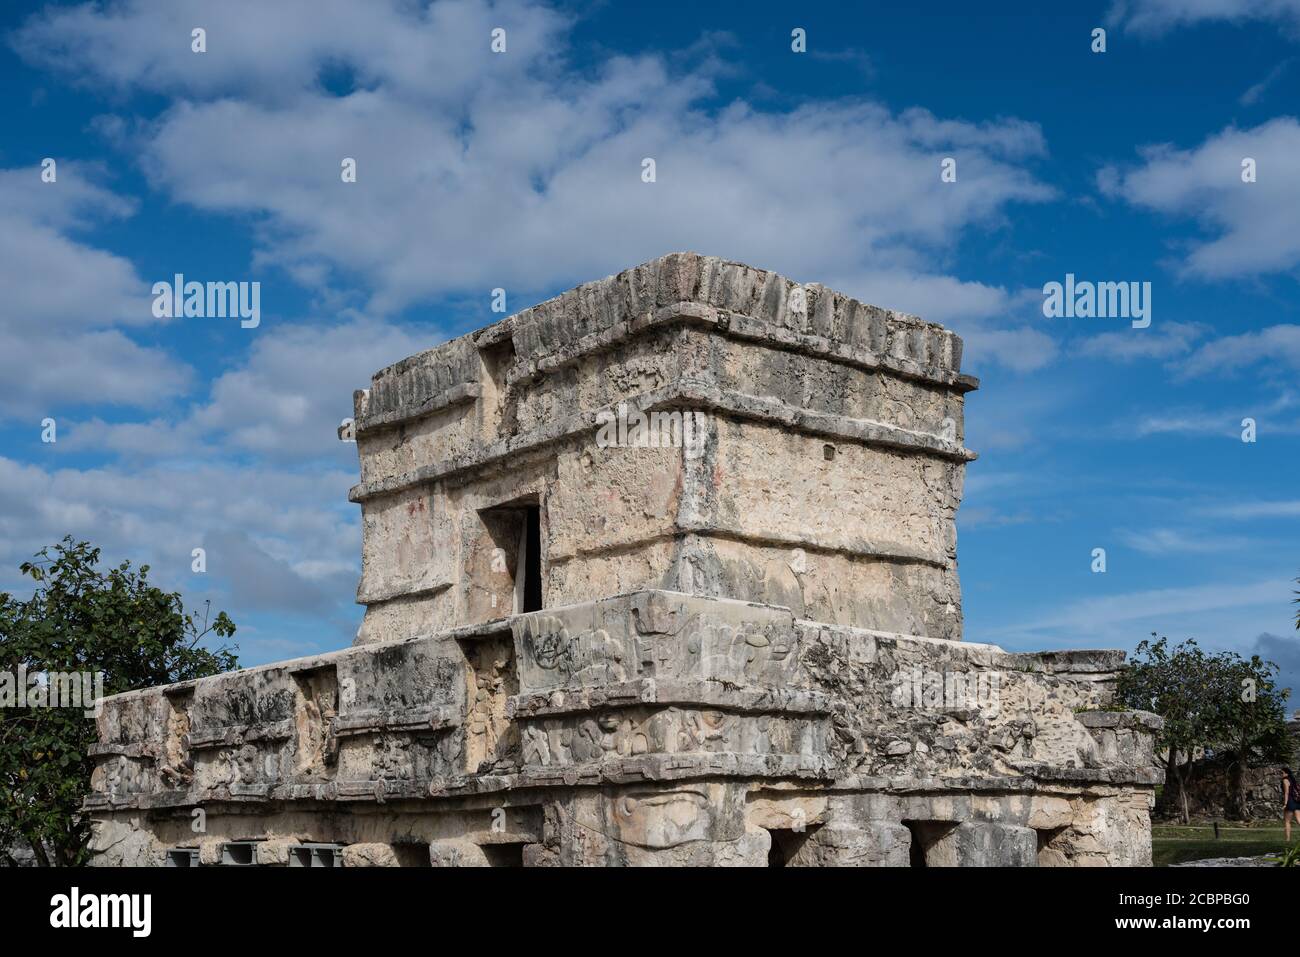 Le Temple des fresques dans les ruines de la ville maya de Tulum sur la côte de la mer des Caraïbes. Parc national de Tulum, Quintana Roo, Mexique. Banque D'Images